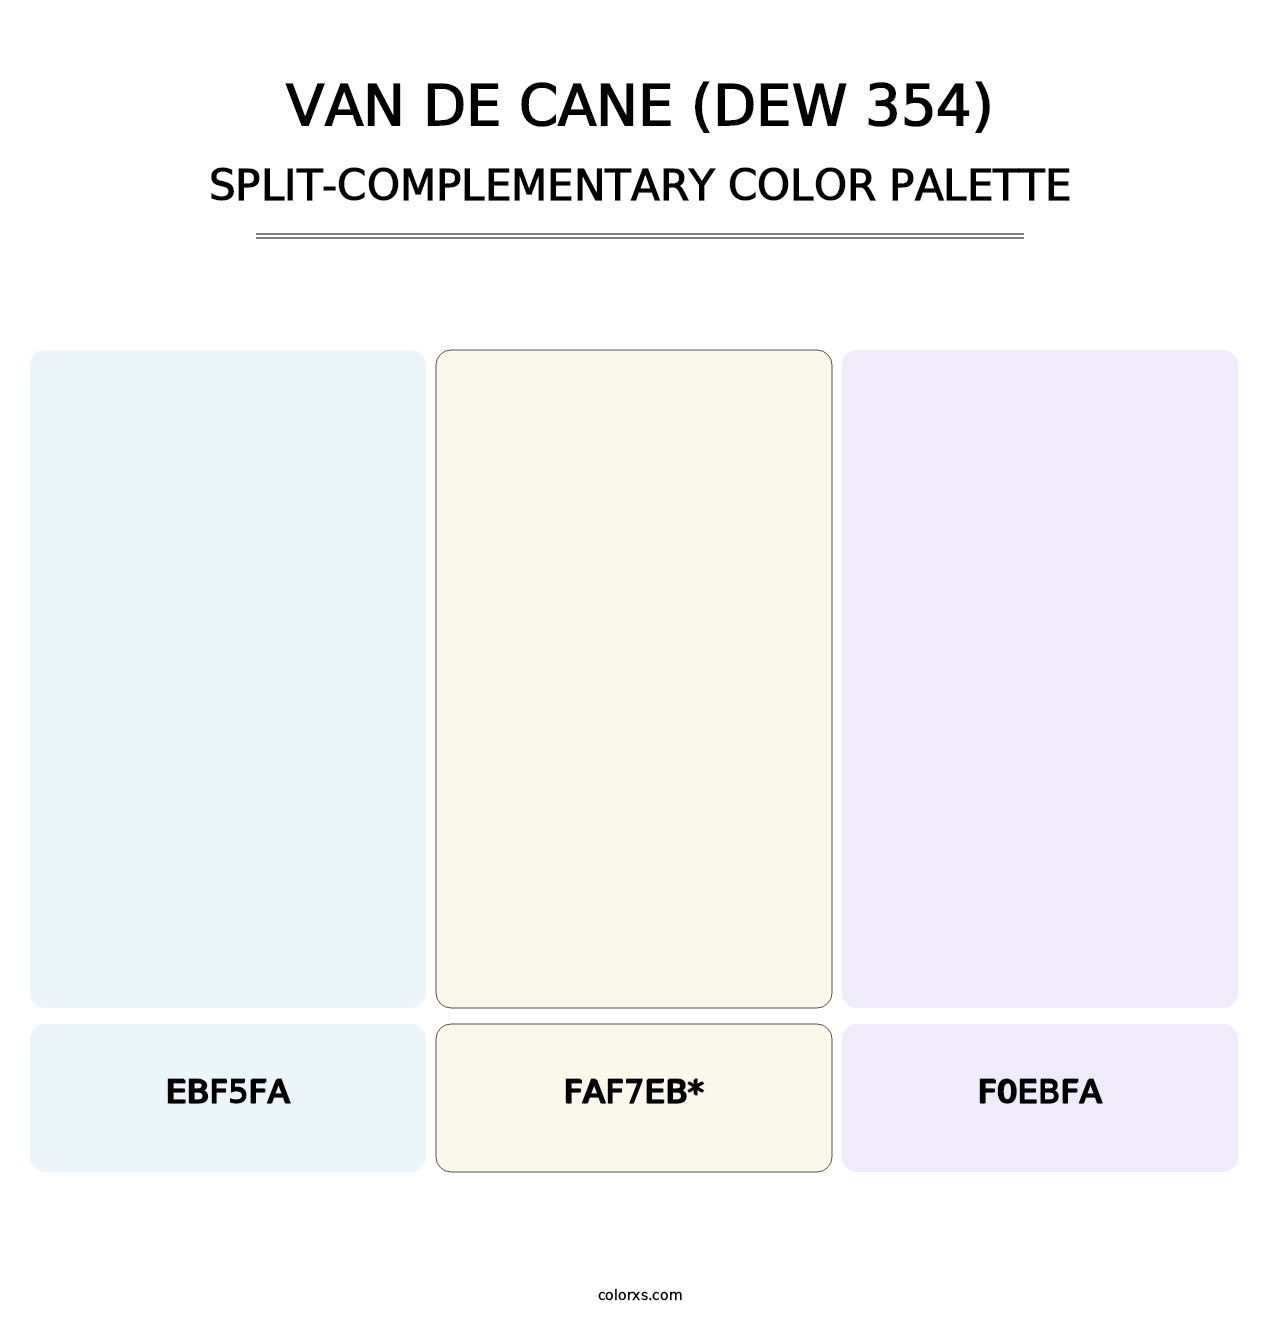 Van de Cane (DEW 354) - Split-Complementary Color Palette